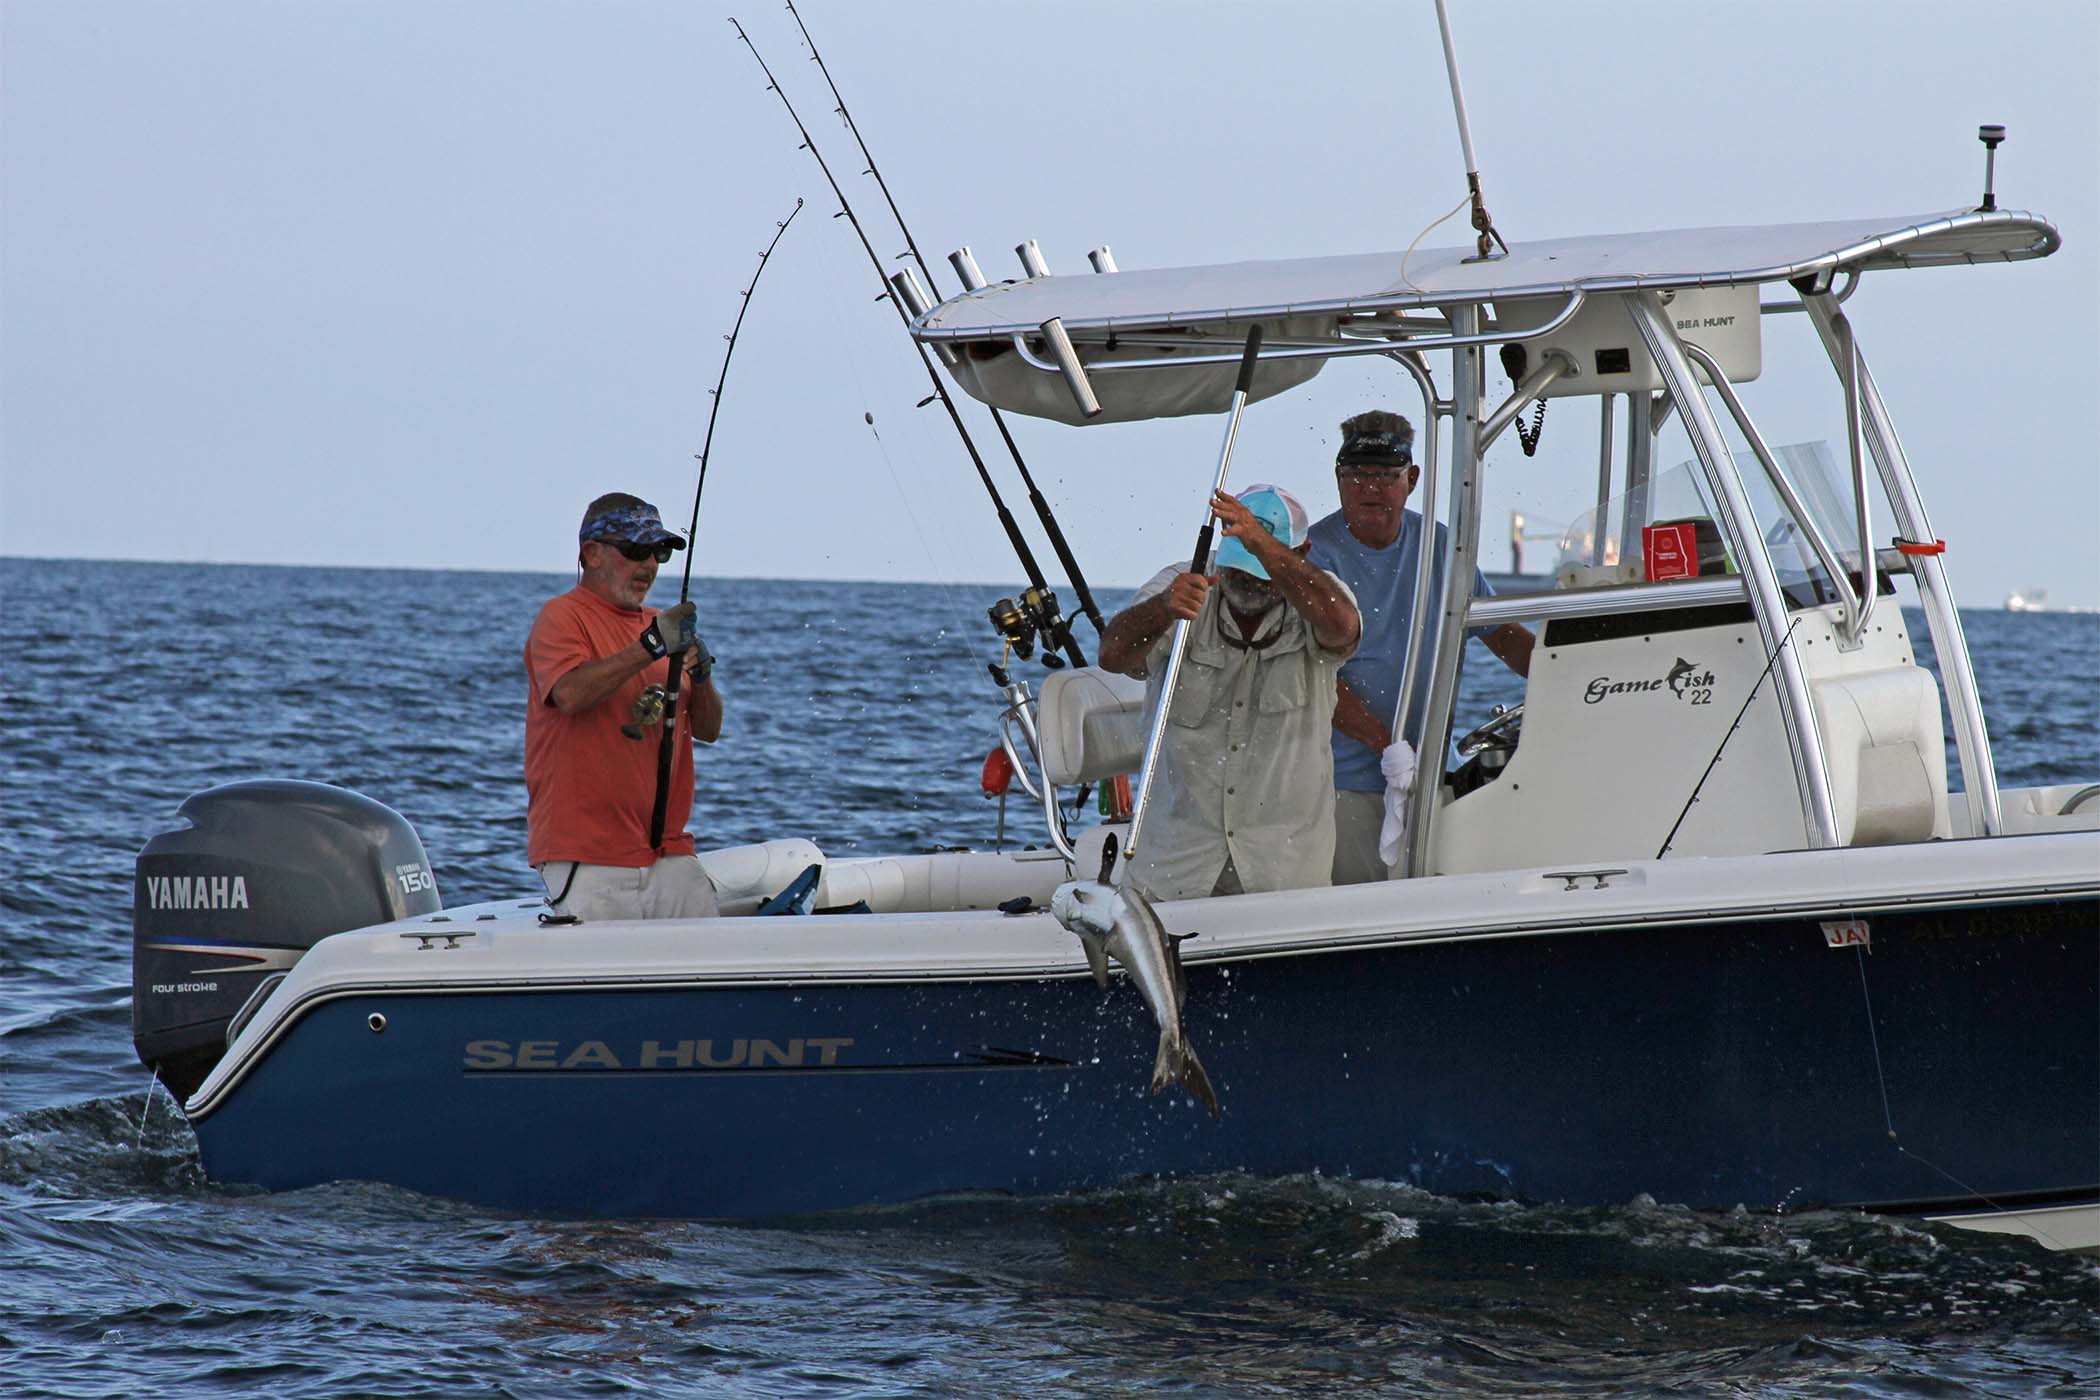 Alabama Free Fishing Day coming next week